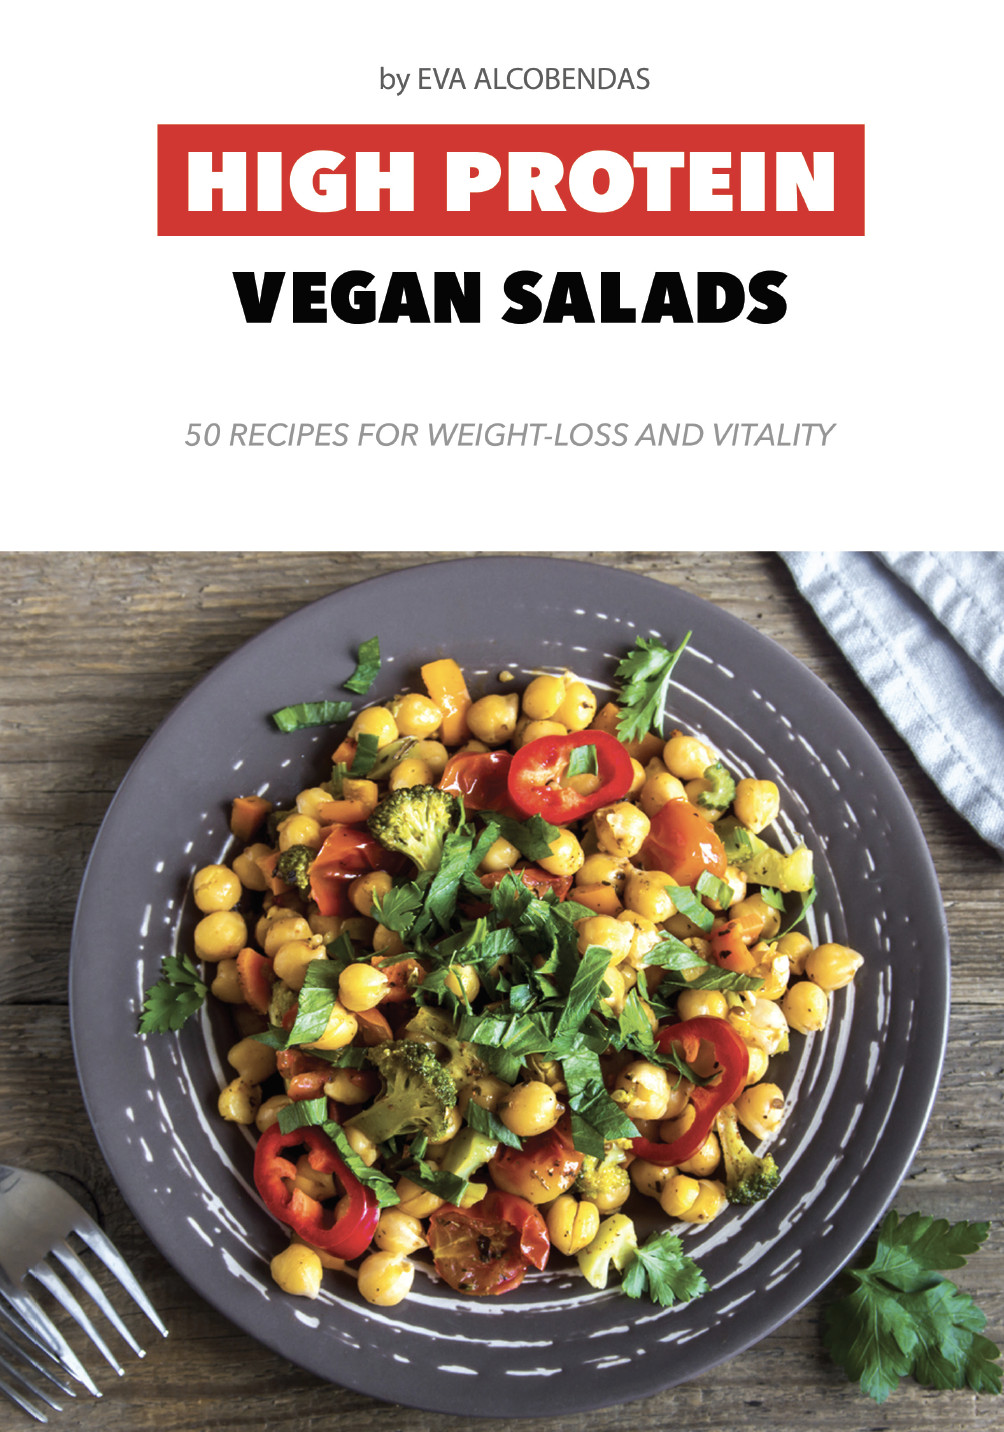 High Protein Vegetarian Salad
 High Protein Vegan Salads